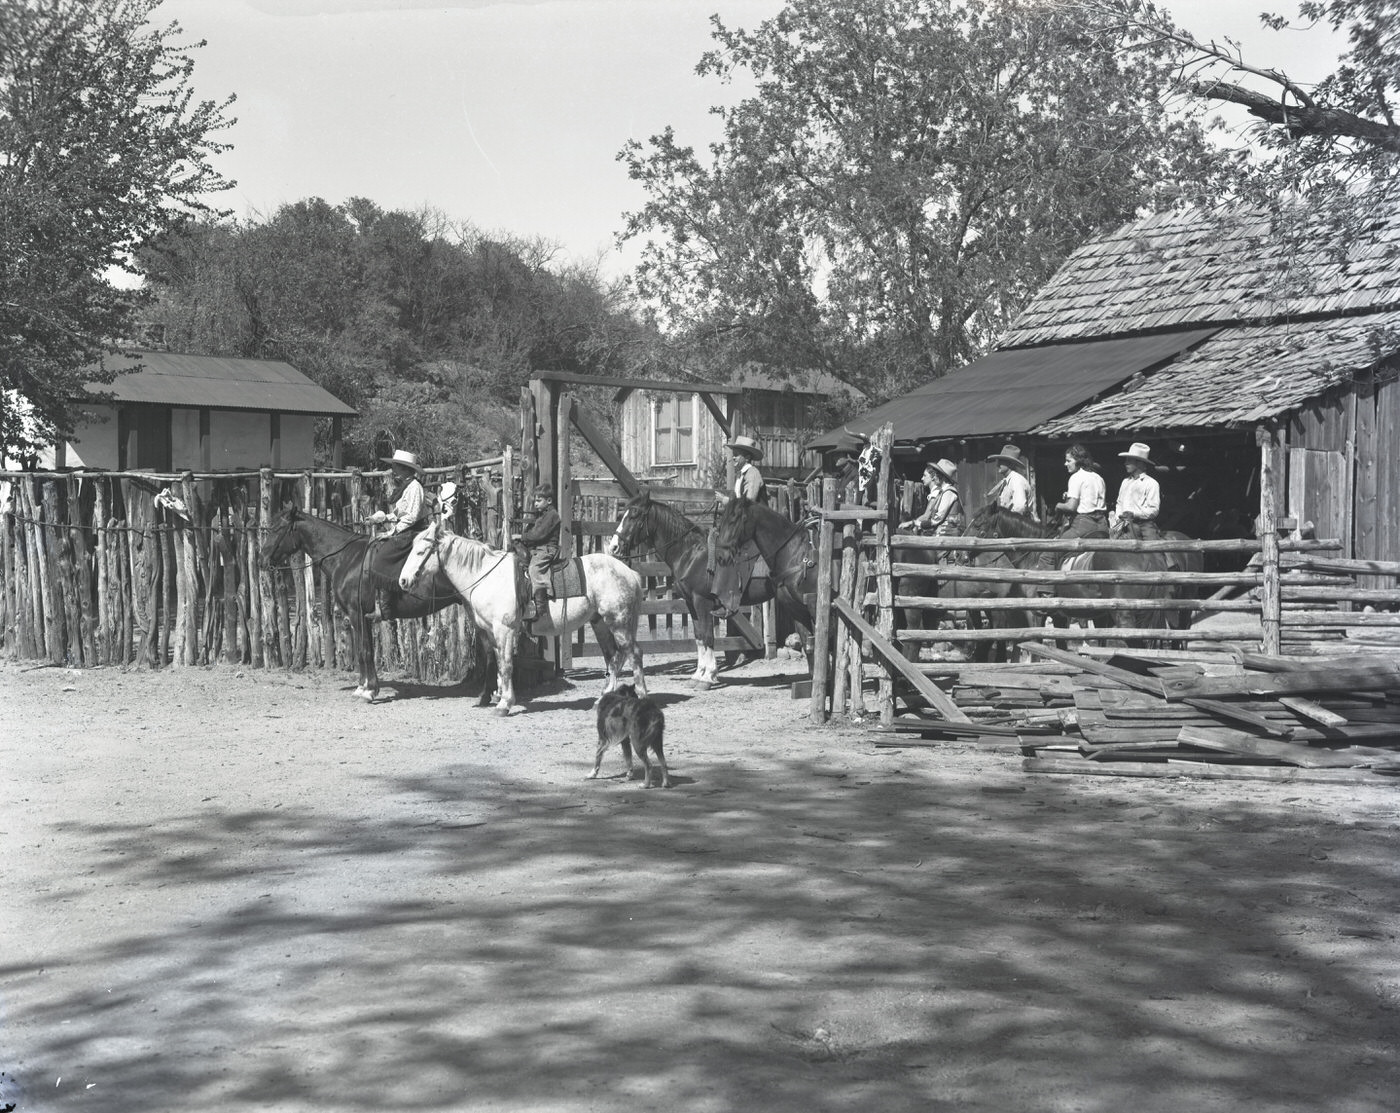 Soda Springs Ranch Guests Horseback Riding, 1930s